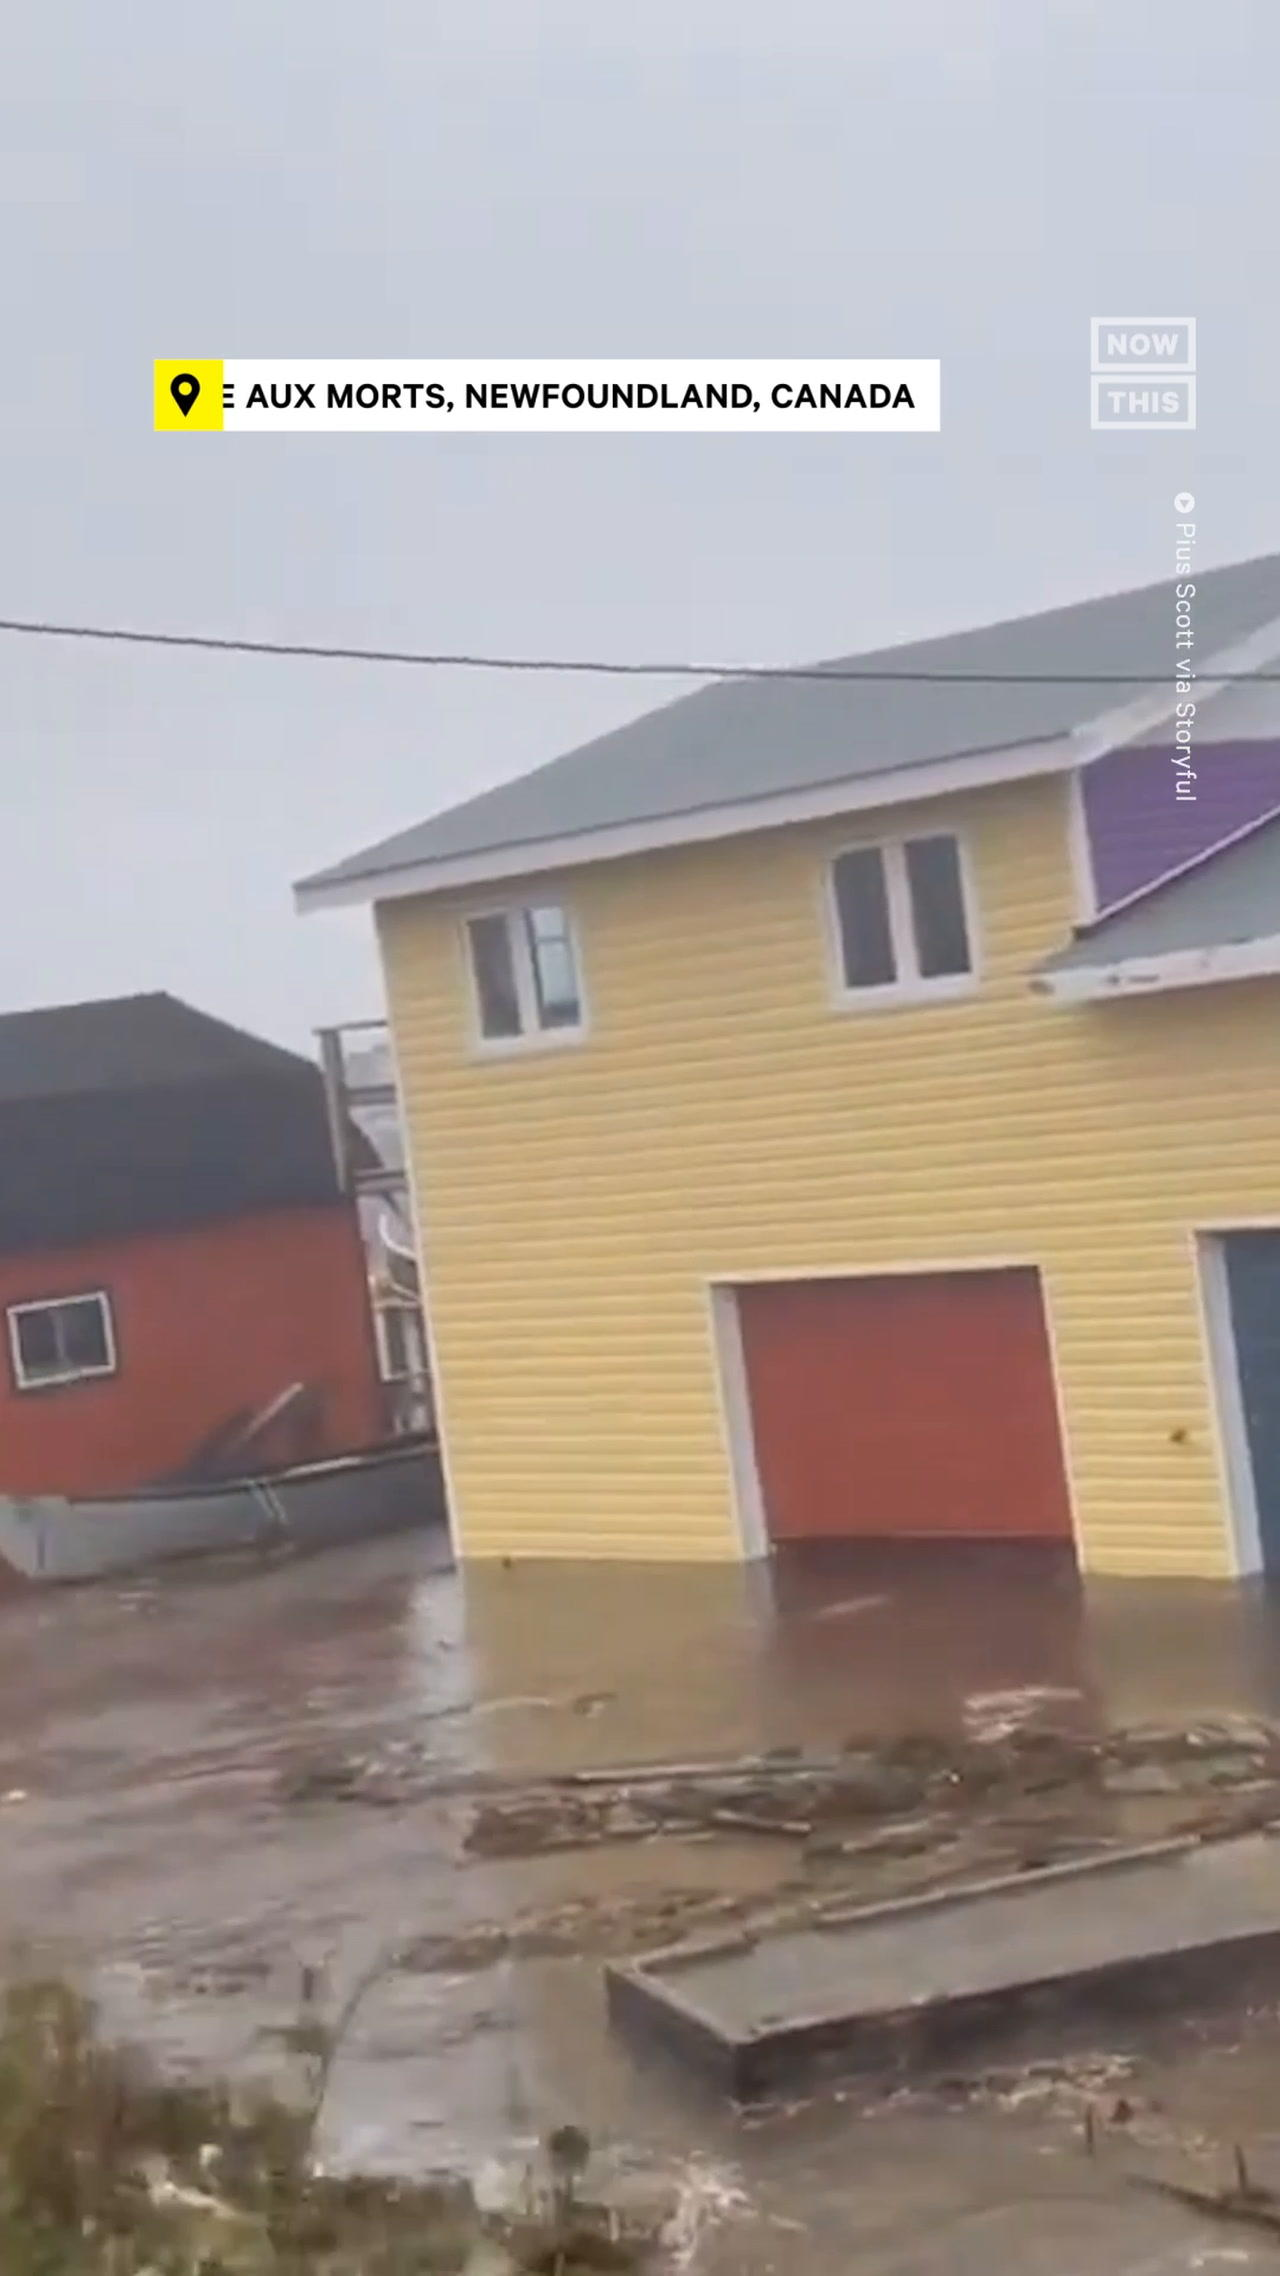 Post-Tropical Storm Fiona Hits Nova Scotia